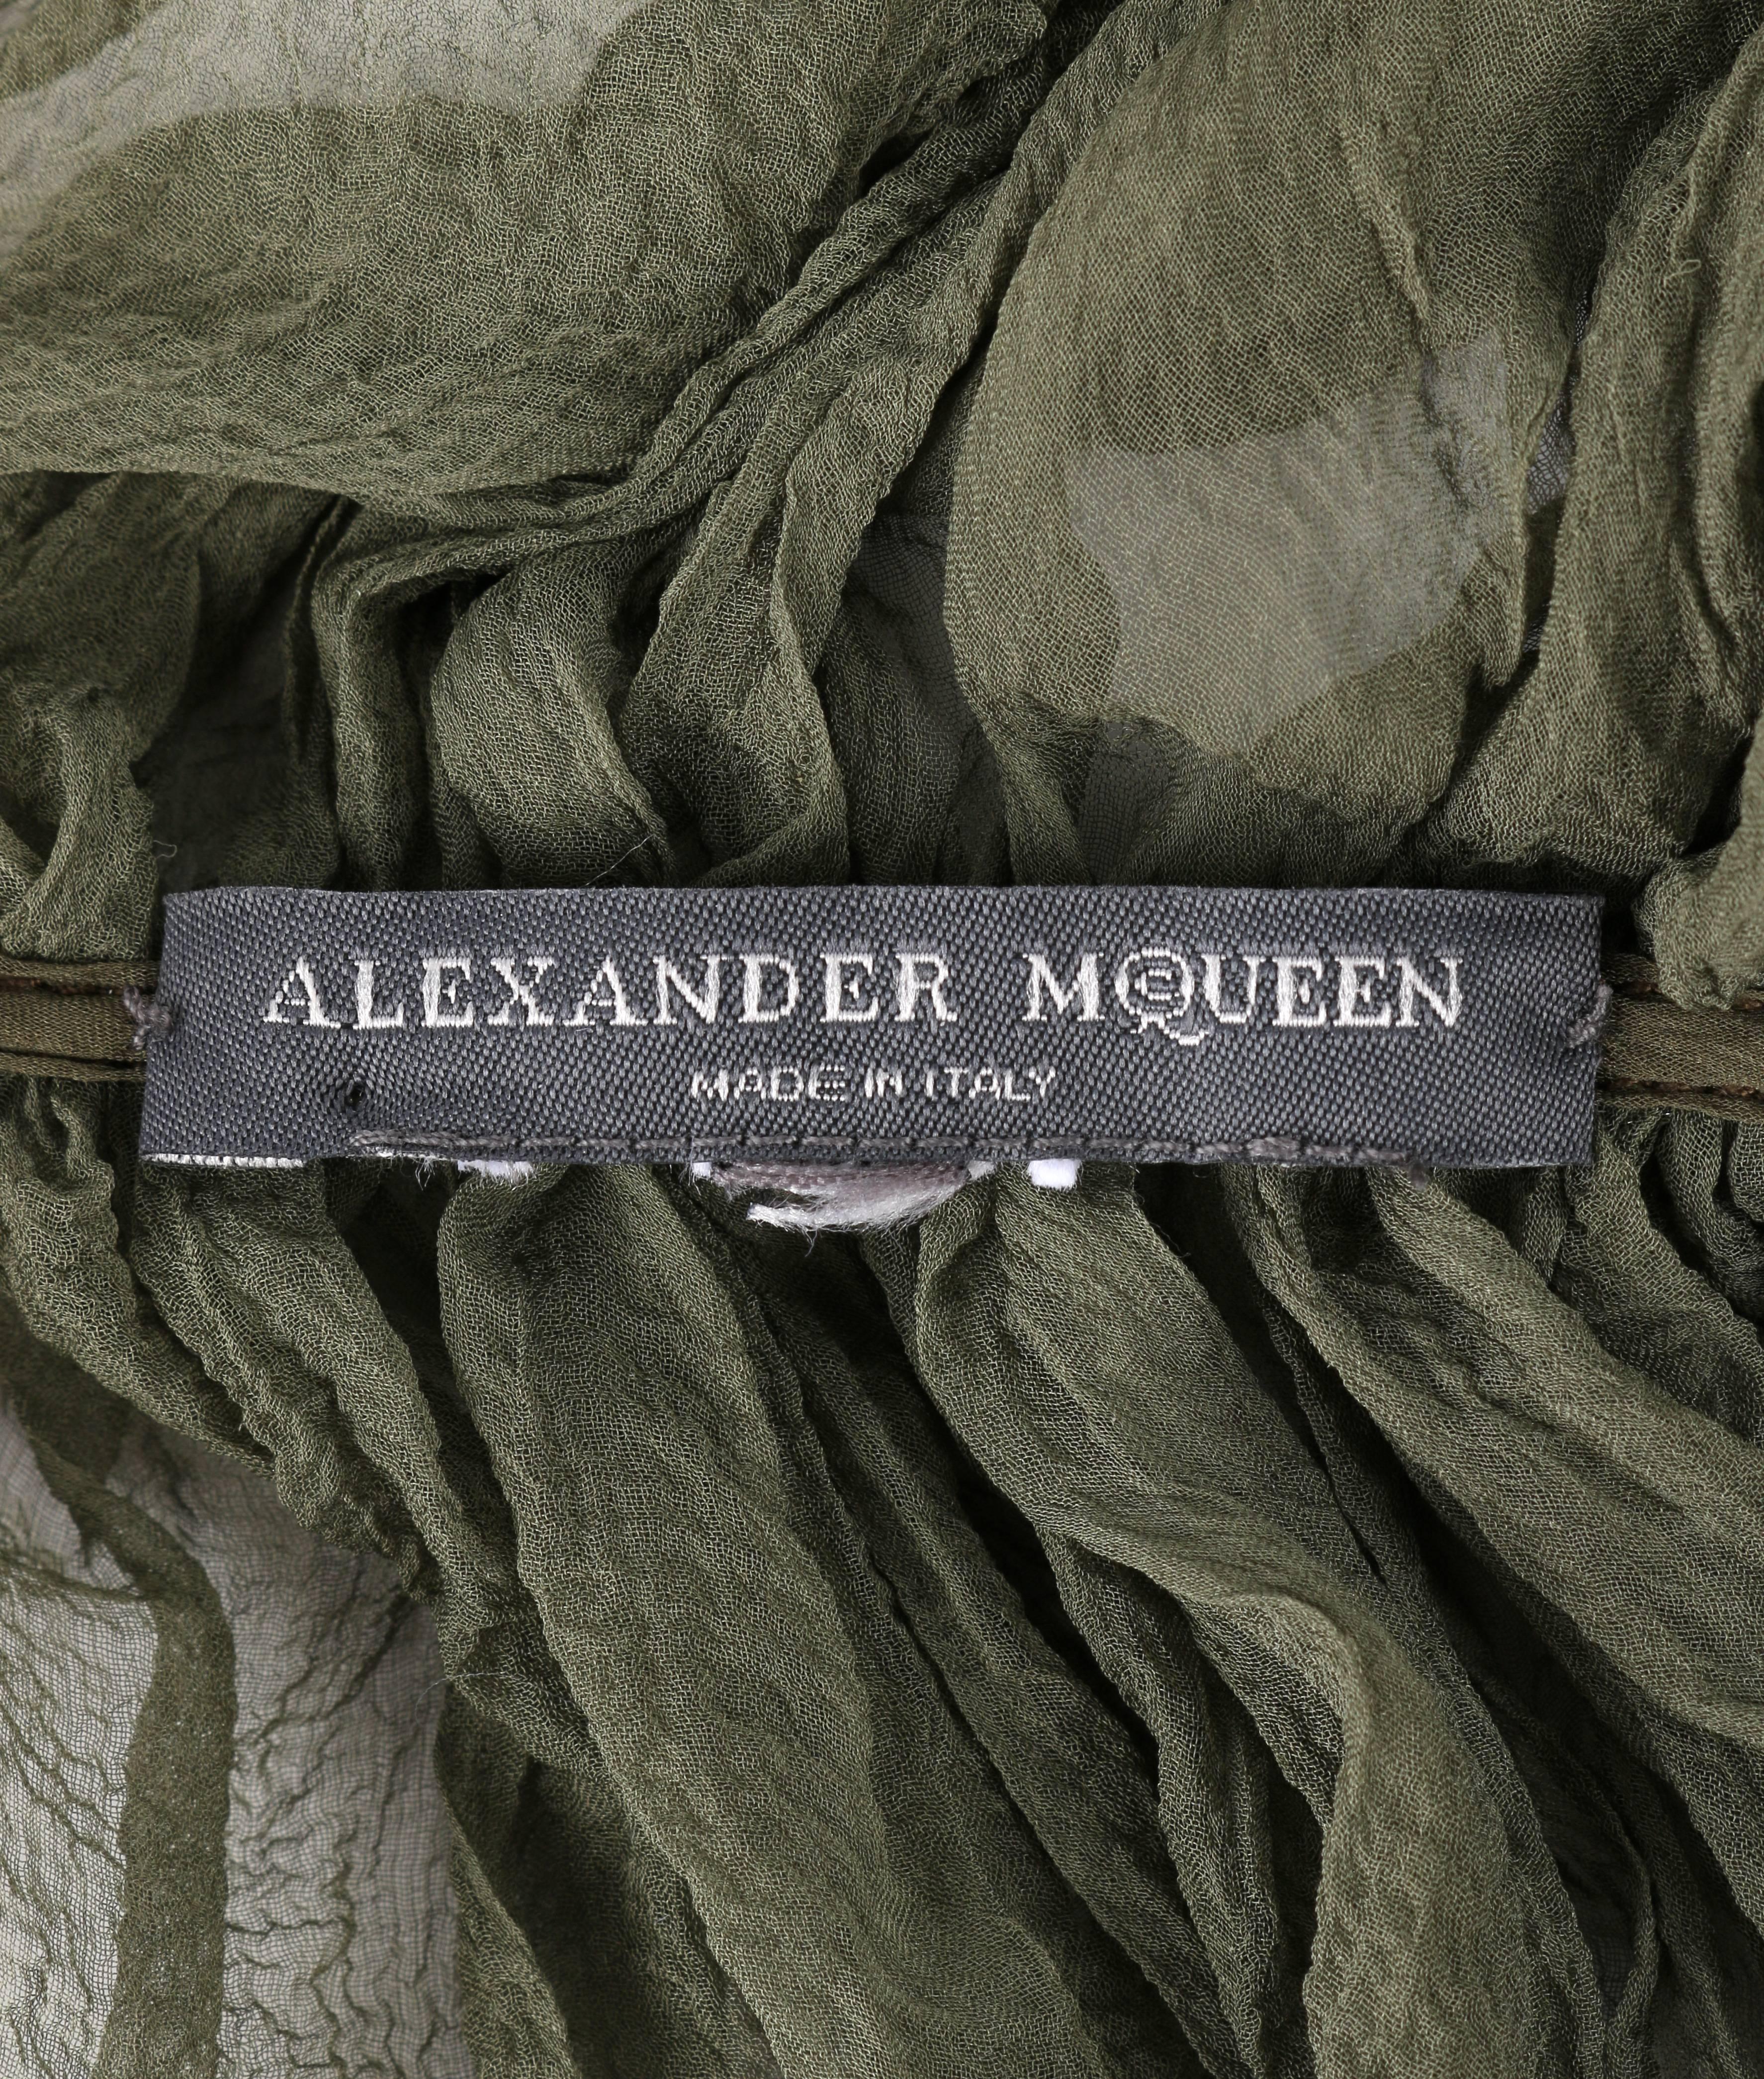 ALEXANDER McQUEEN S/S 2003 